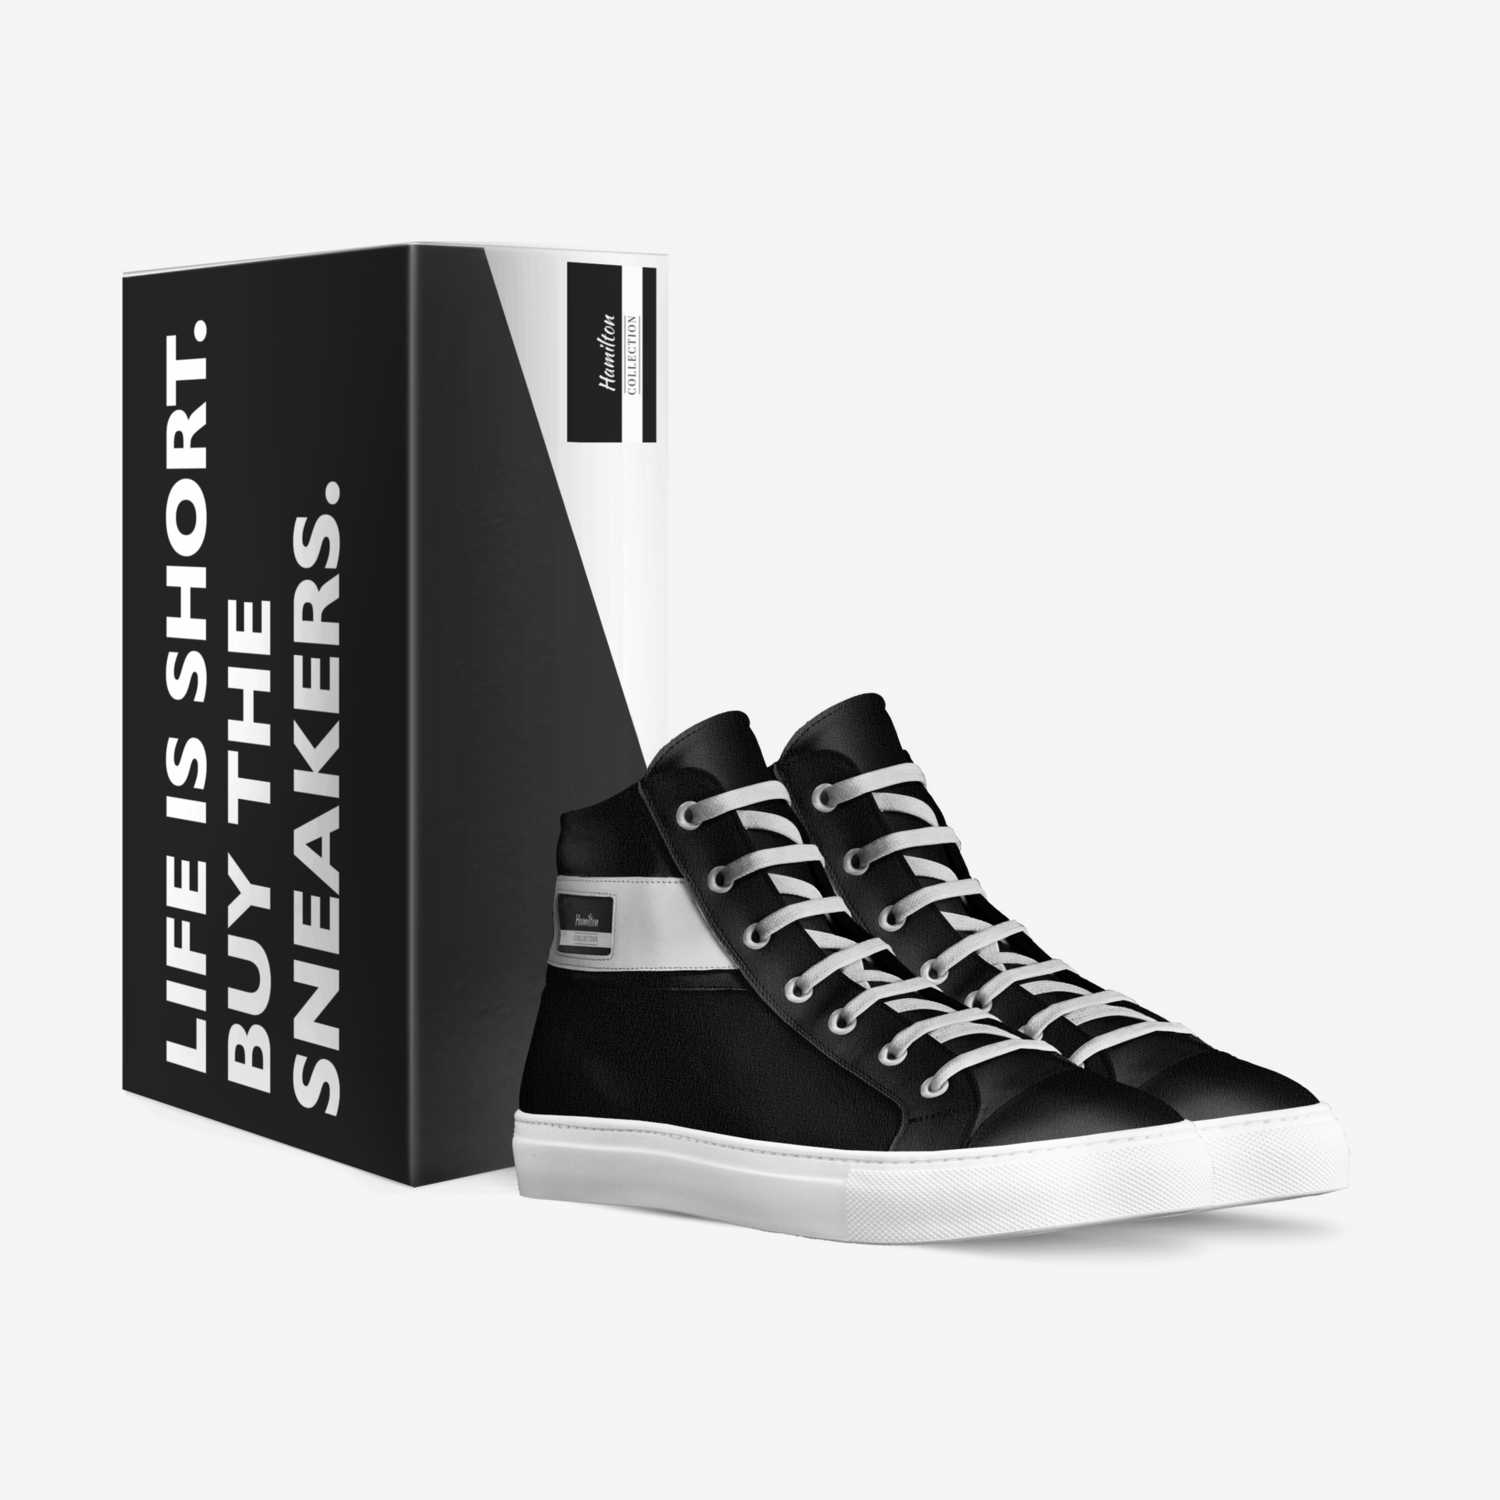 Hamilton custom made in Italy shoes by Jye Hamilton | Box view